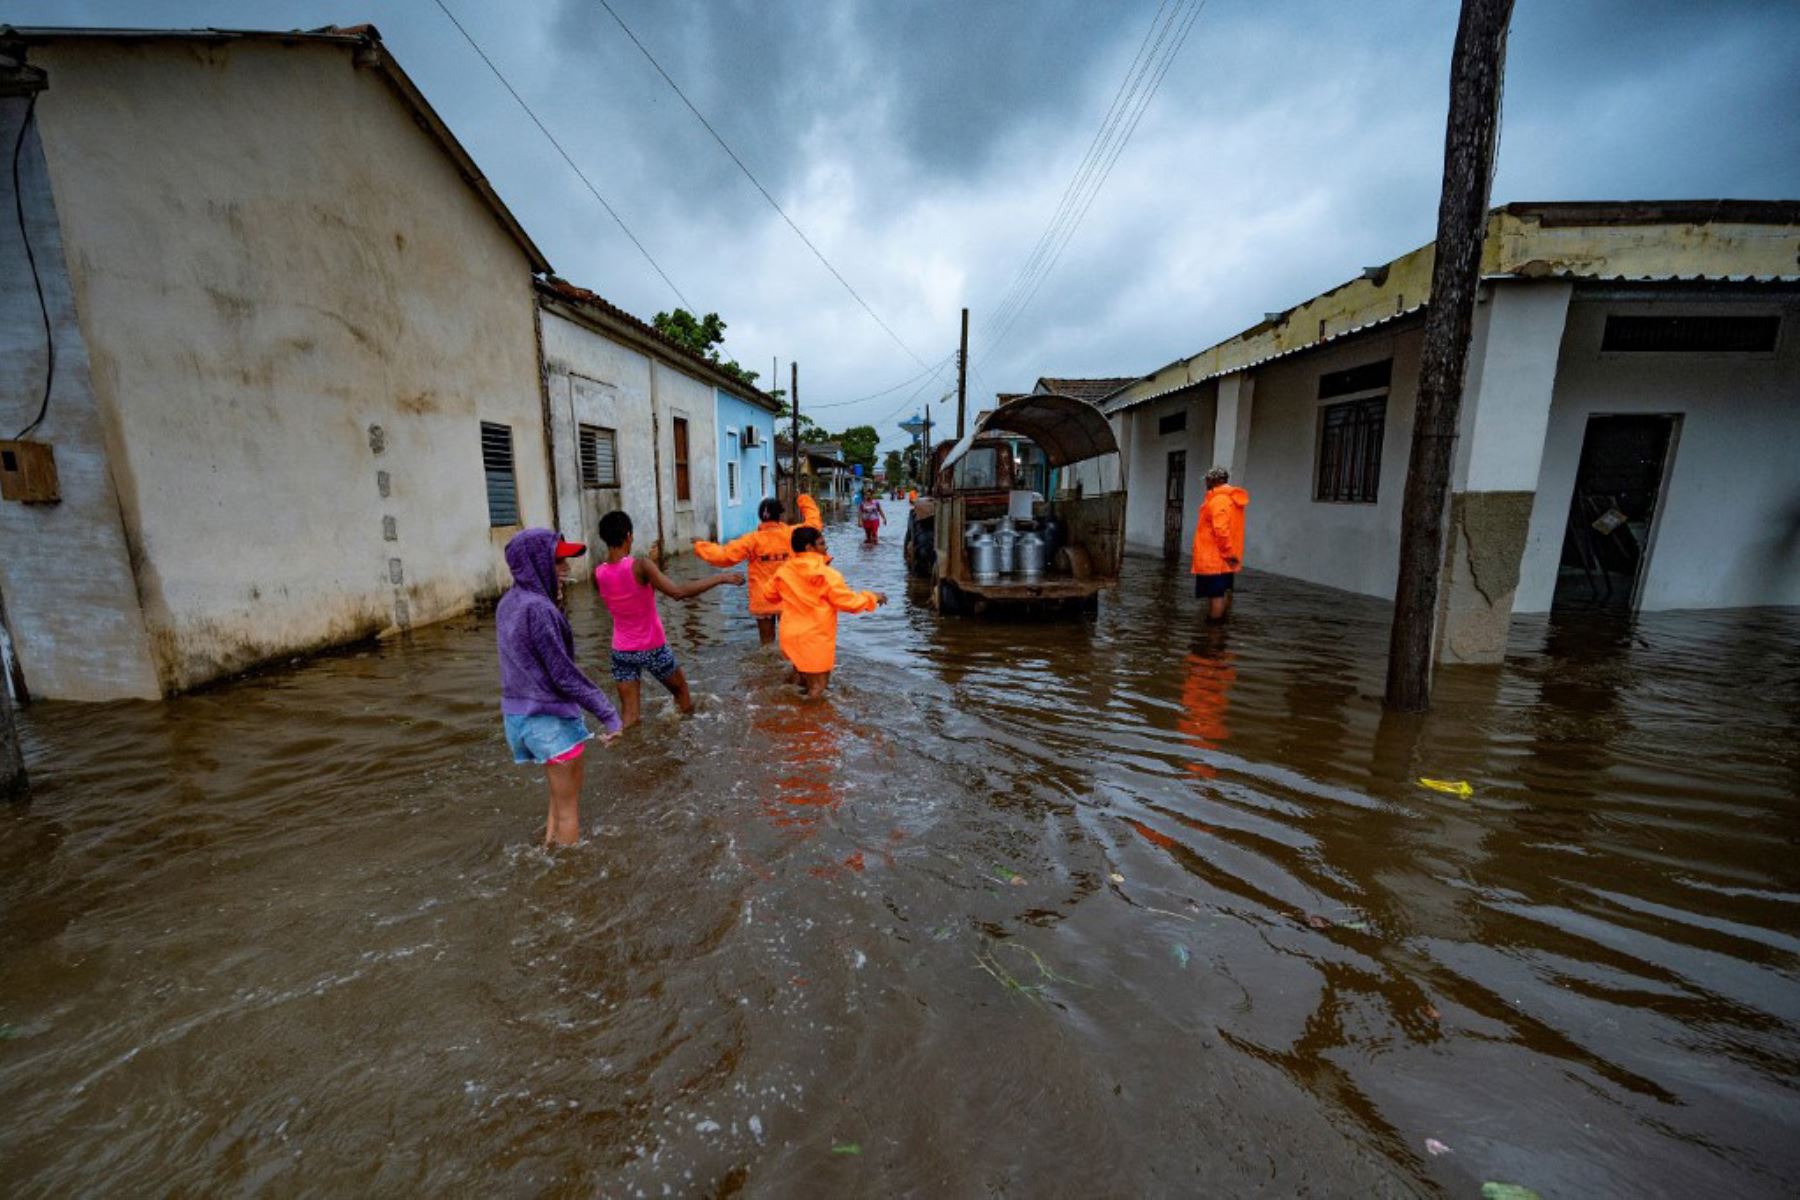 La gente camina por una calle inundada en Batabano, Cuba, durante el paso del huracán Ian. Foto: AFP